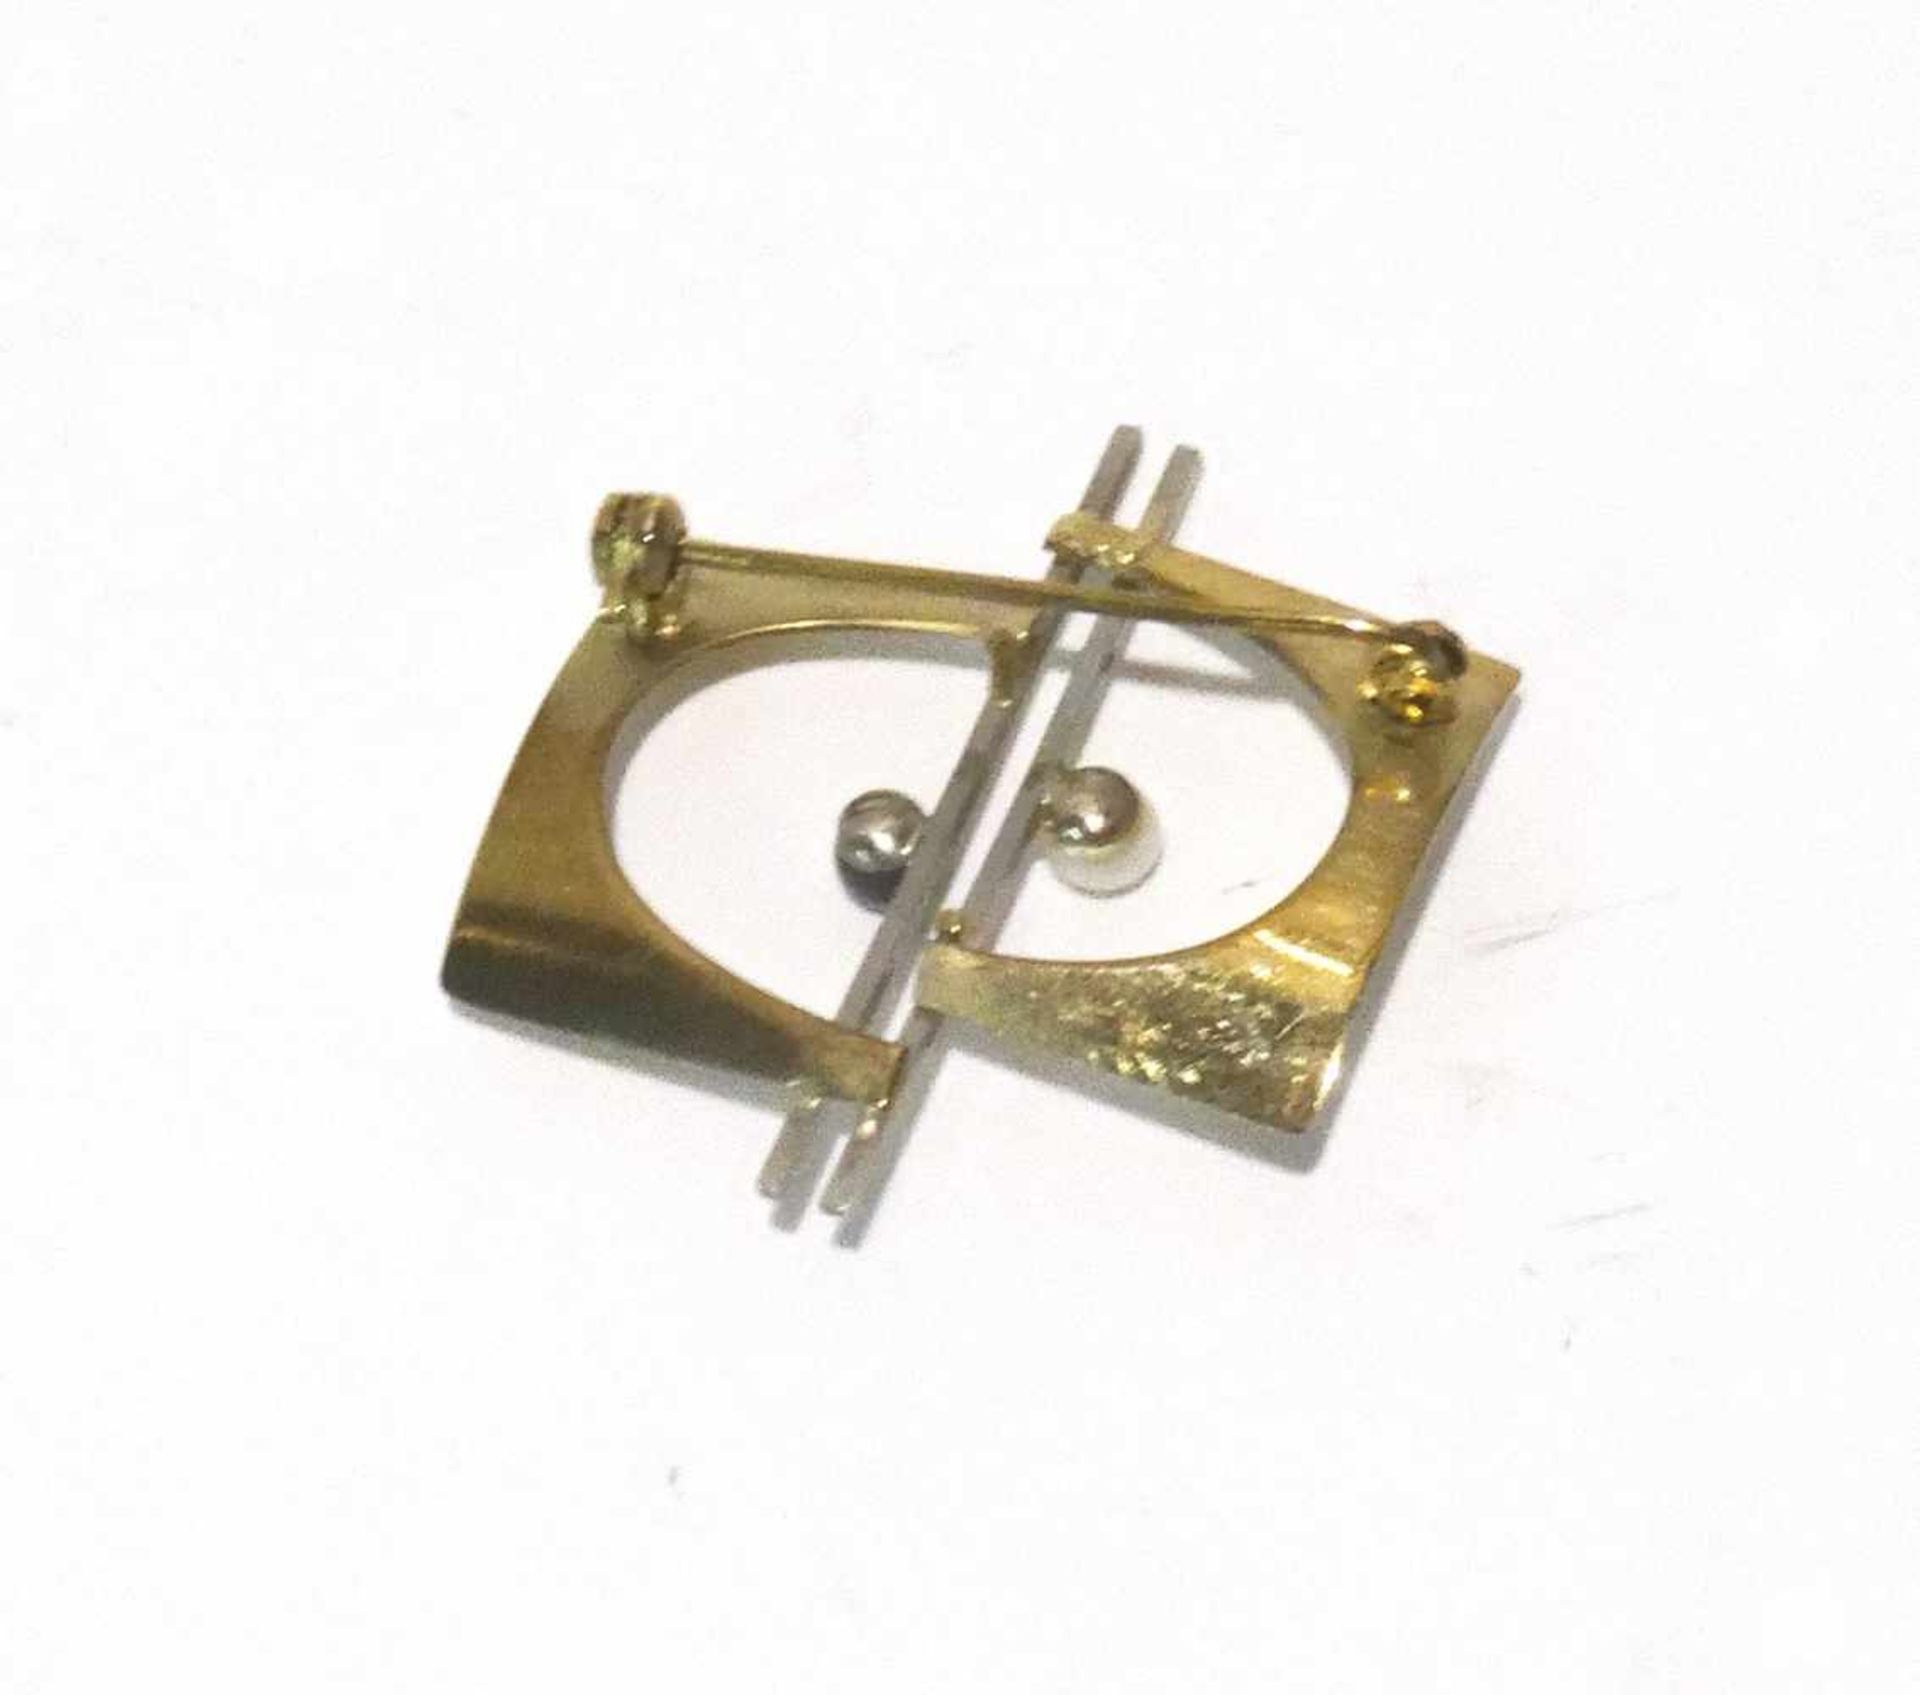 333 Gold Brosche / Nadel 2-farbig mit 2 Perlen besetzt, ca. 3 x 3cm, Gewicht ges. ca. 2,7g - Image 2 of 2